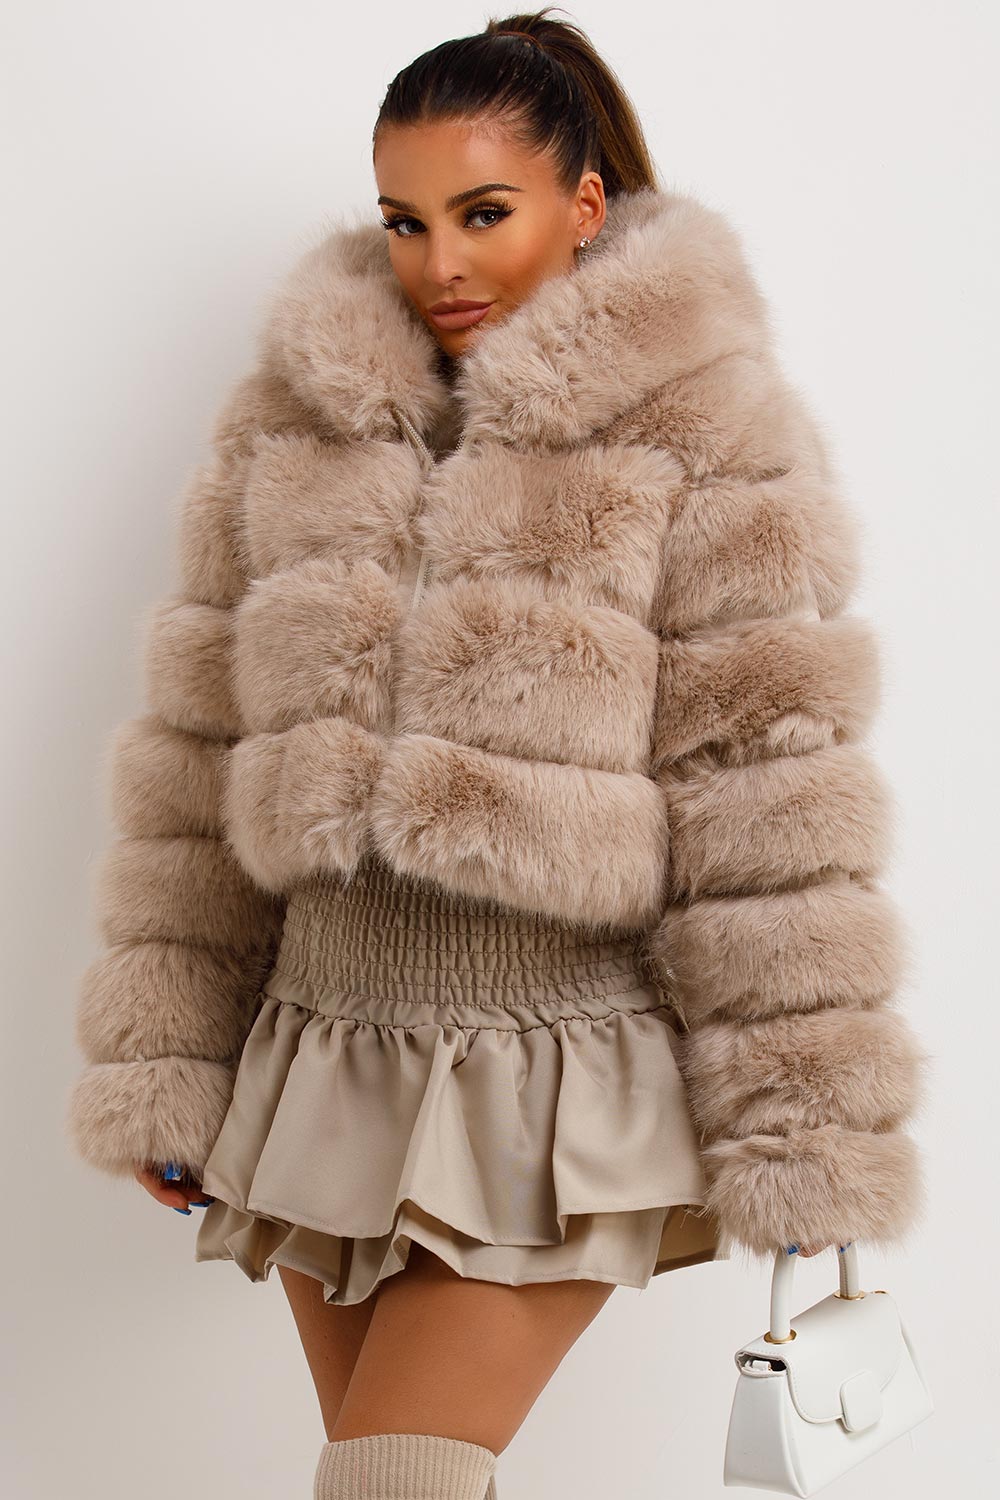 Women Faux Fur Coat Hooded Parka Ladies Winter Fleece Lined Long Jacket  Outwear